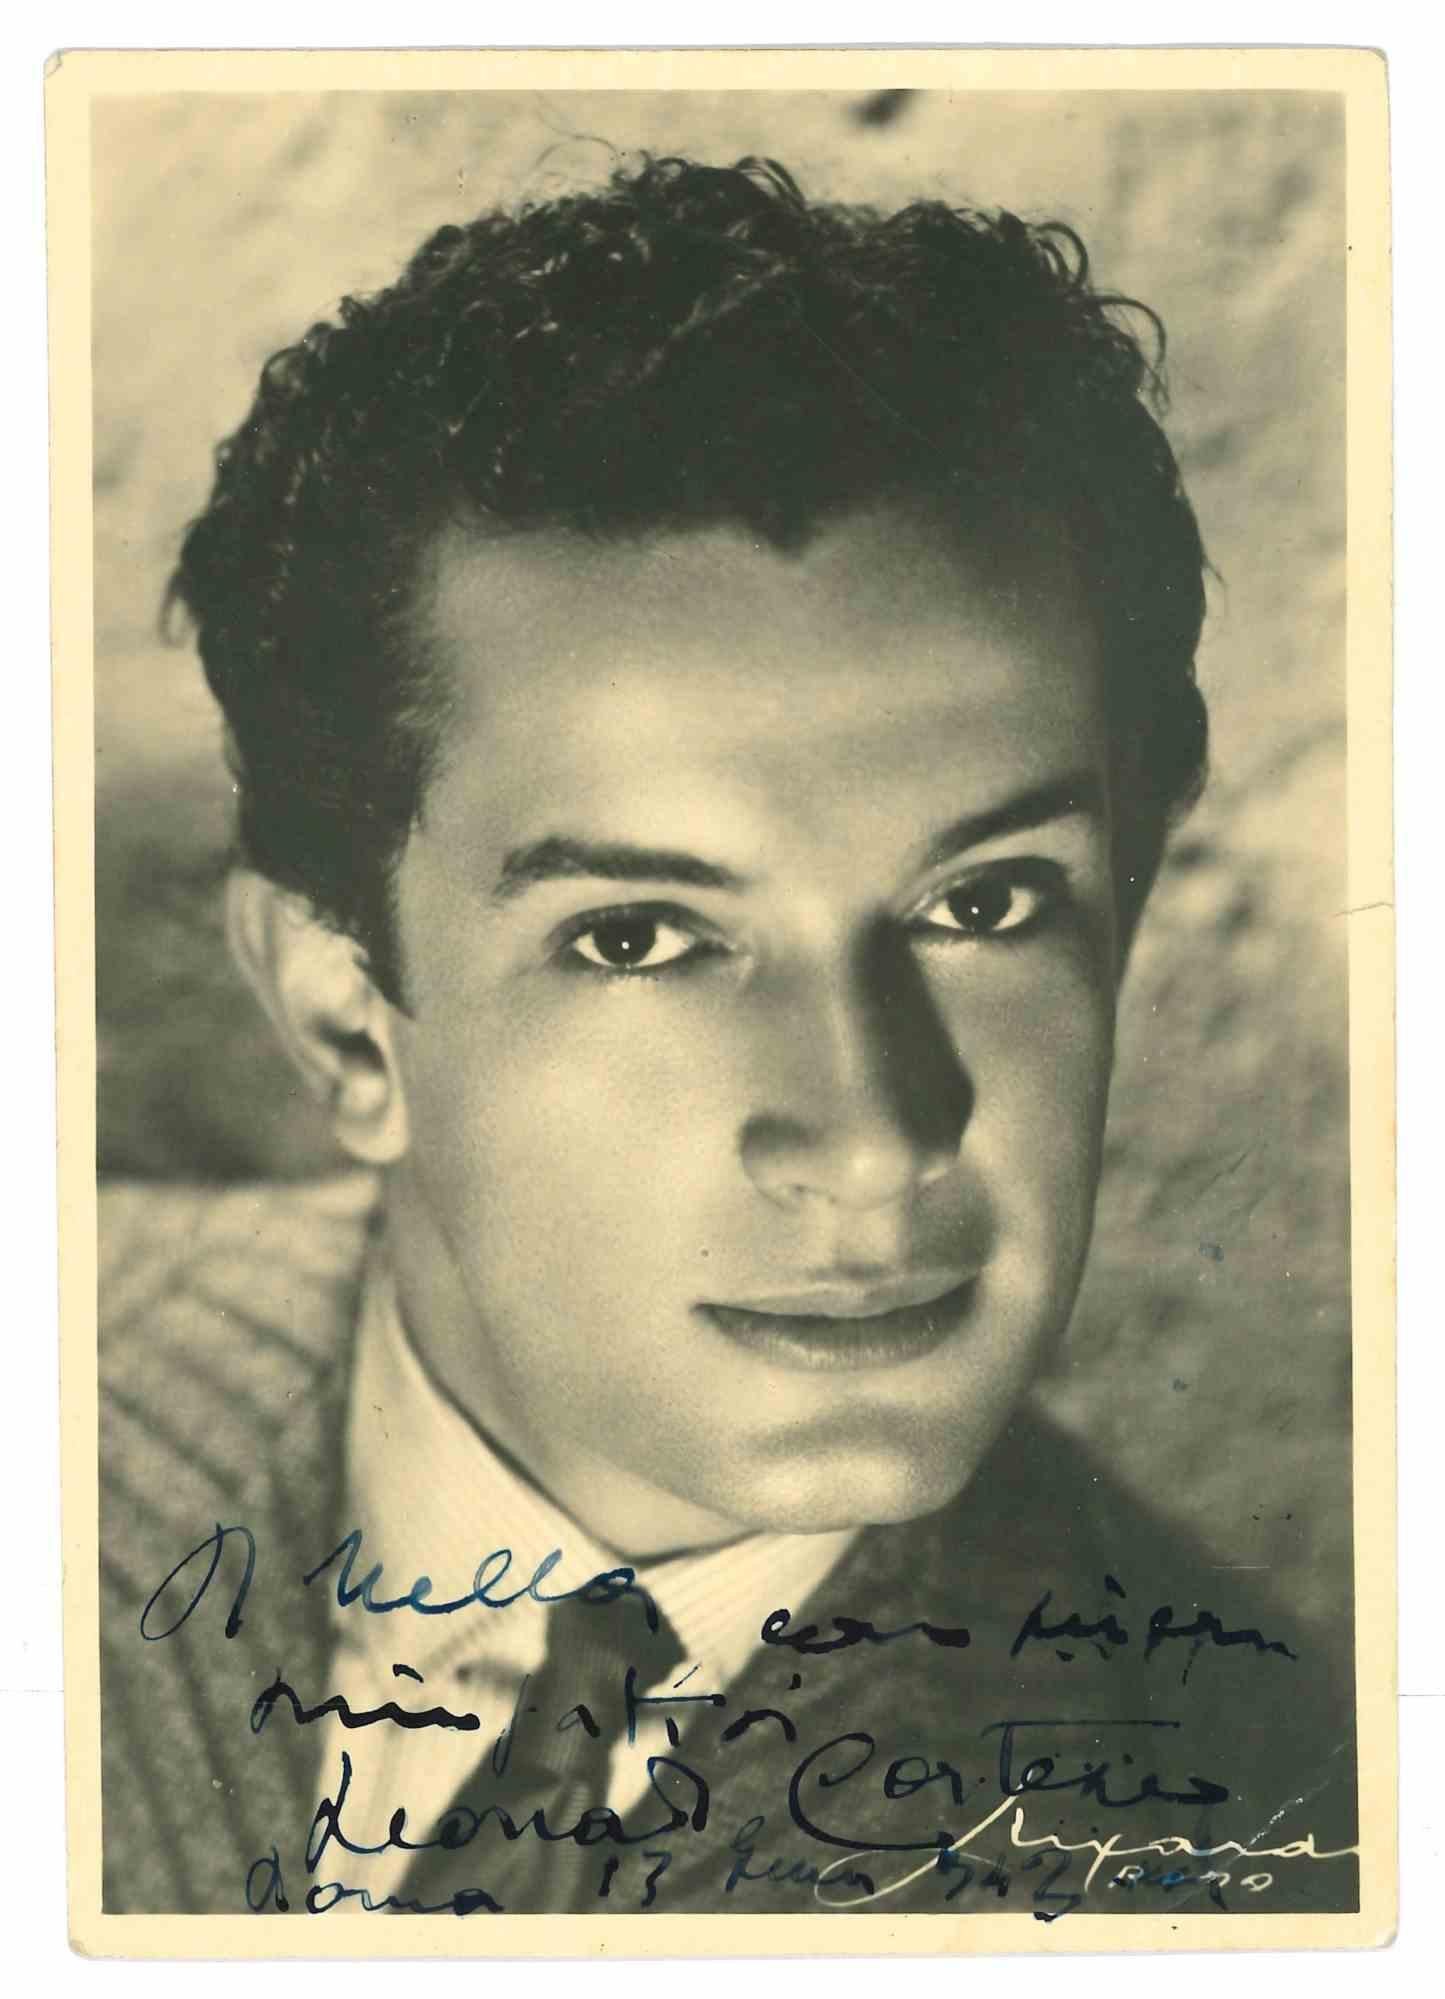 Unknown Portrait Photograph - Autographed Portrait of Leonardo Cortese - Vintage Photograph - 1942